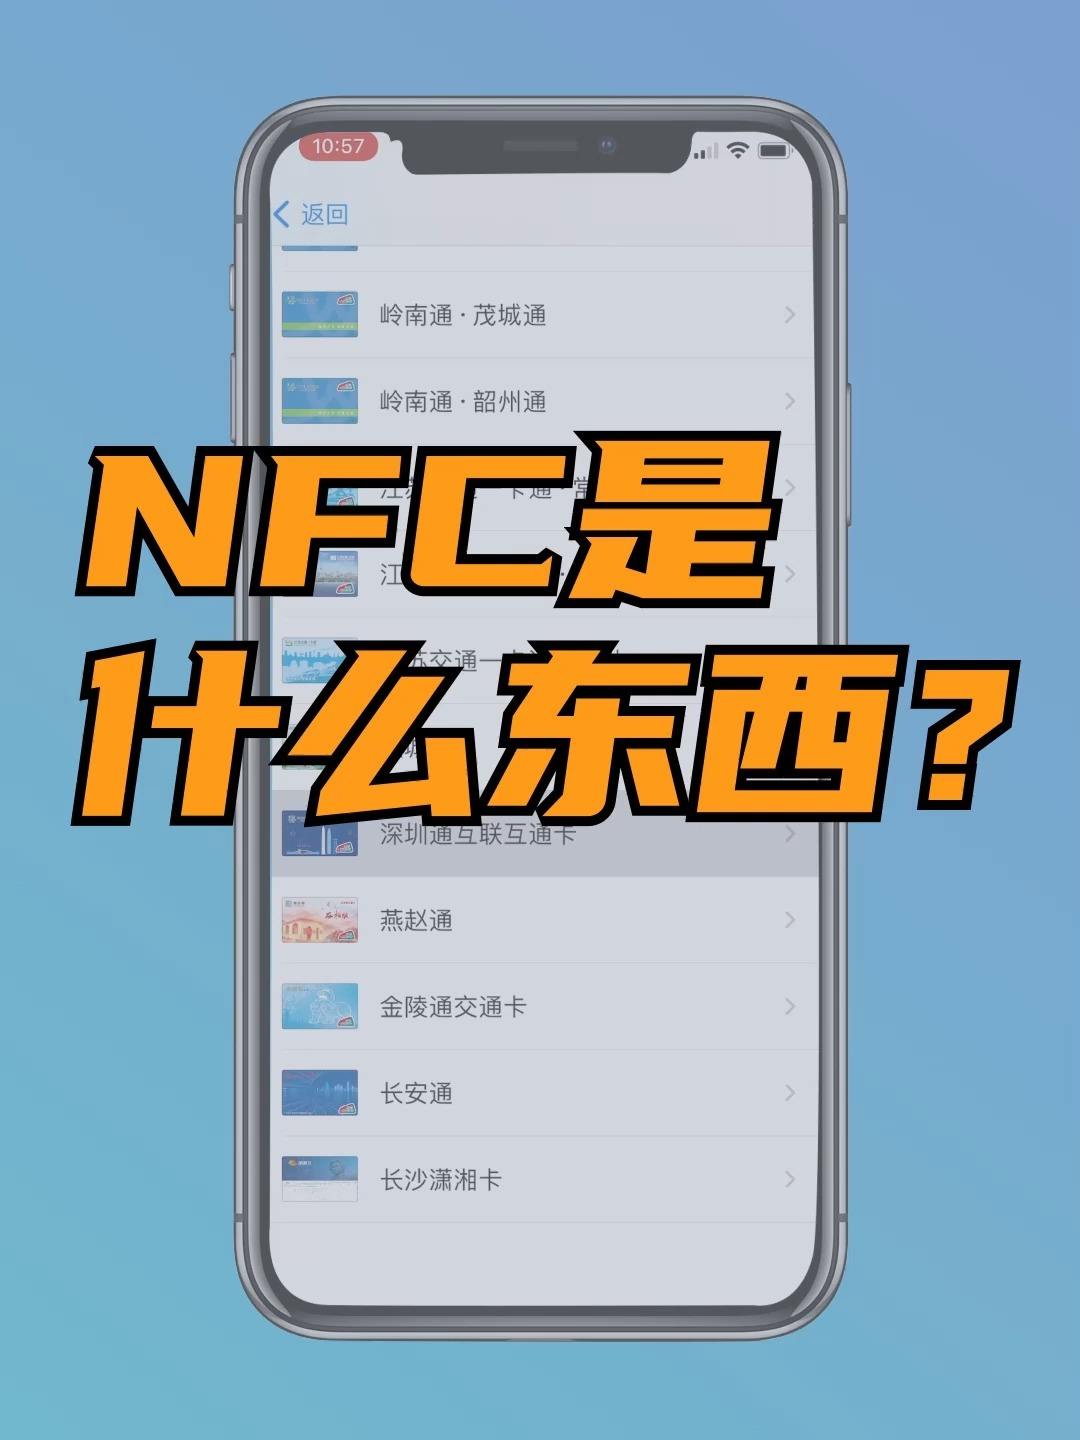 nfc是什么功能华为-第2张图片-王尘宇